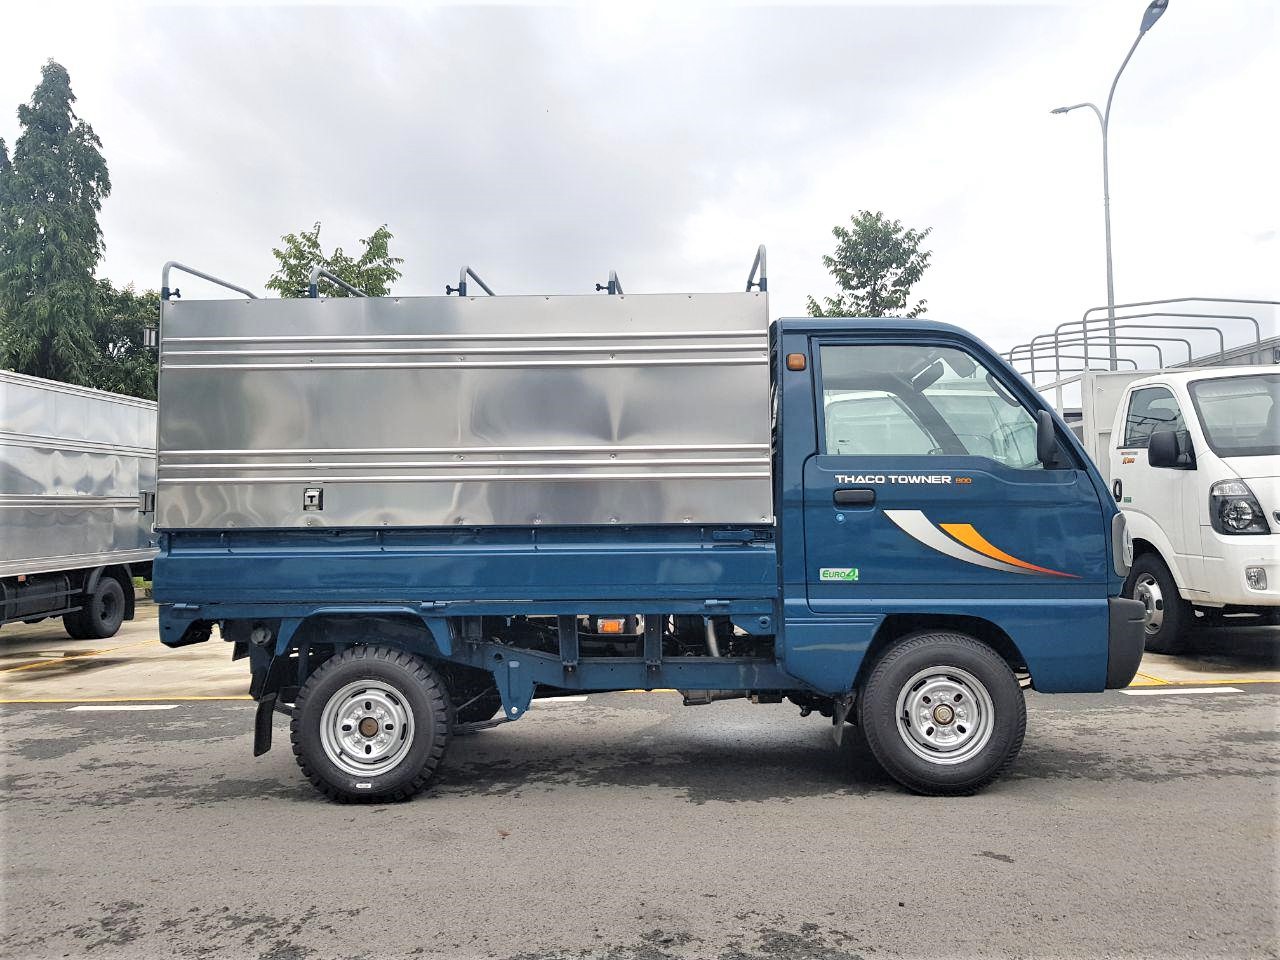 Thaco TOWNER 800 2020 - Bán xe tải 990kg Towner800, xe mới 100%. Hỗ trợ trả góp - Liên hệ 0938808967 để biết thêm thông tin